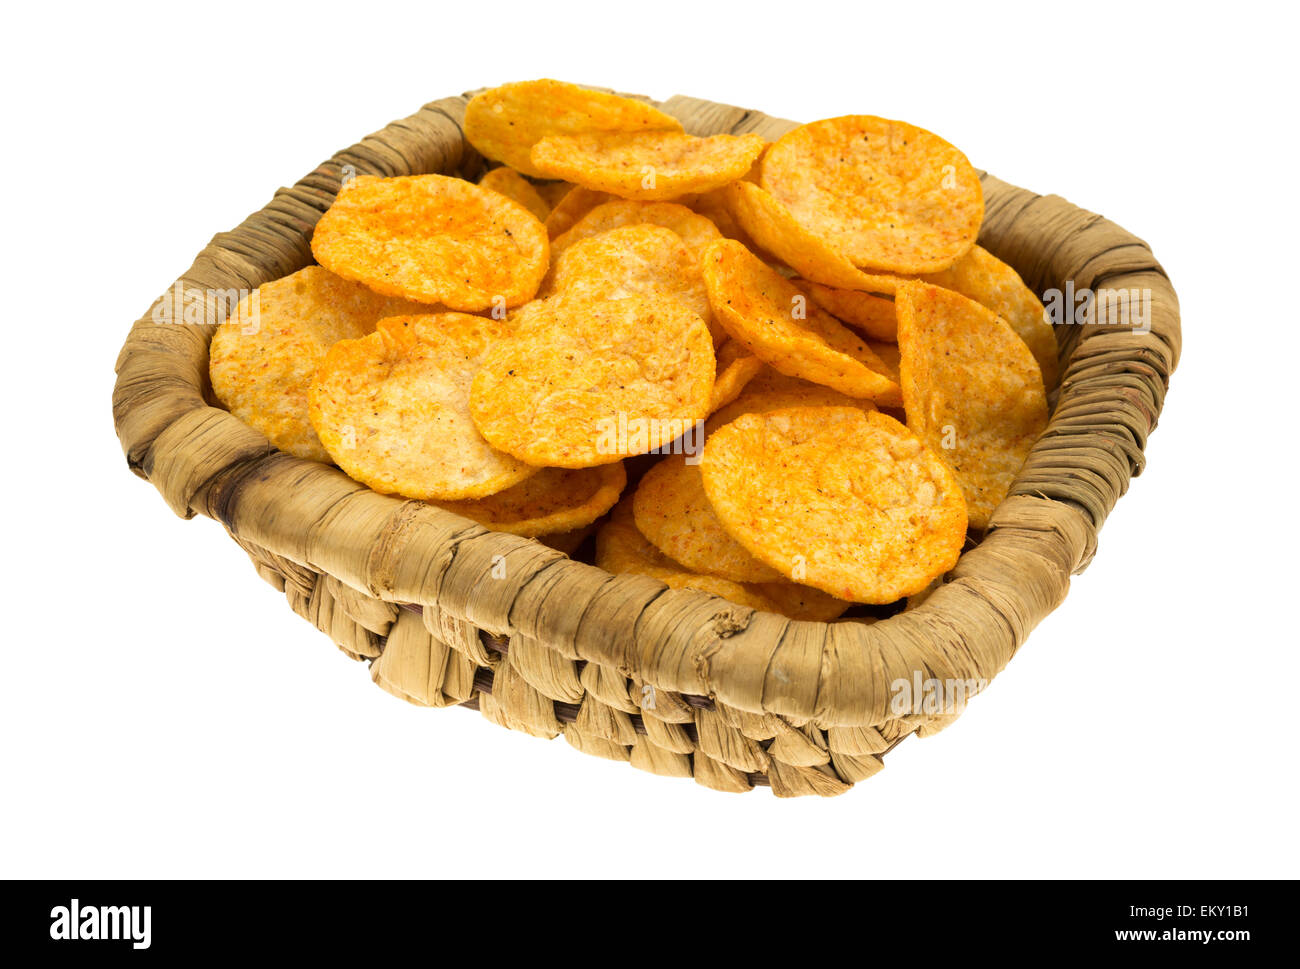 Ein Weidenkorb gefüllt mit Grill aromatisiert Kartoffelchips auf weißem Hintergrund. Stockfoto